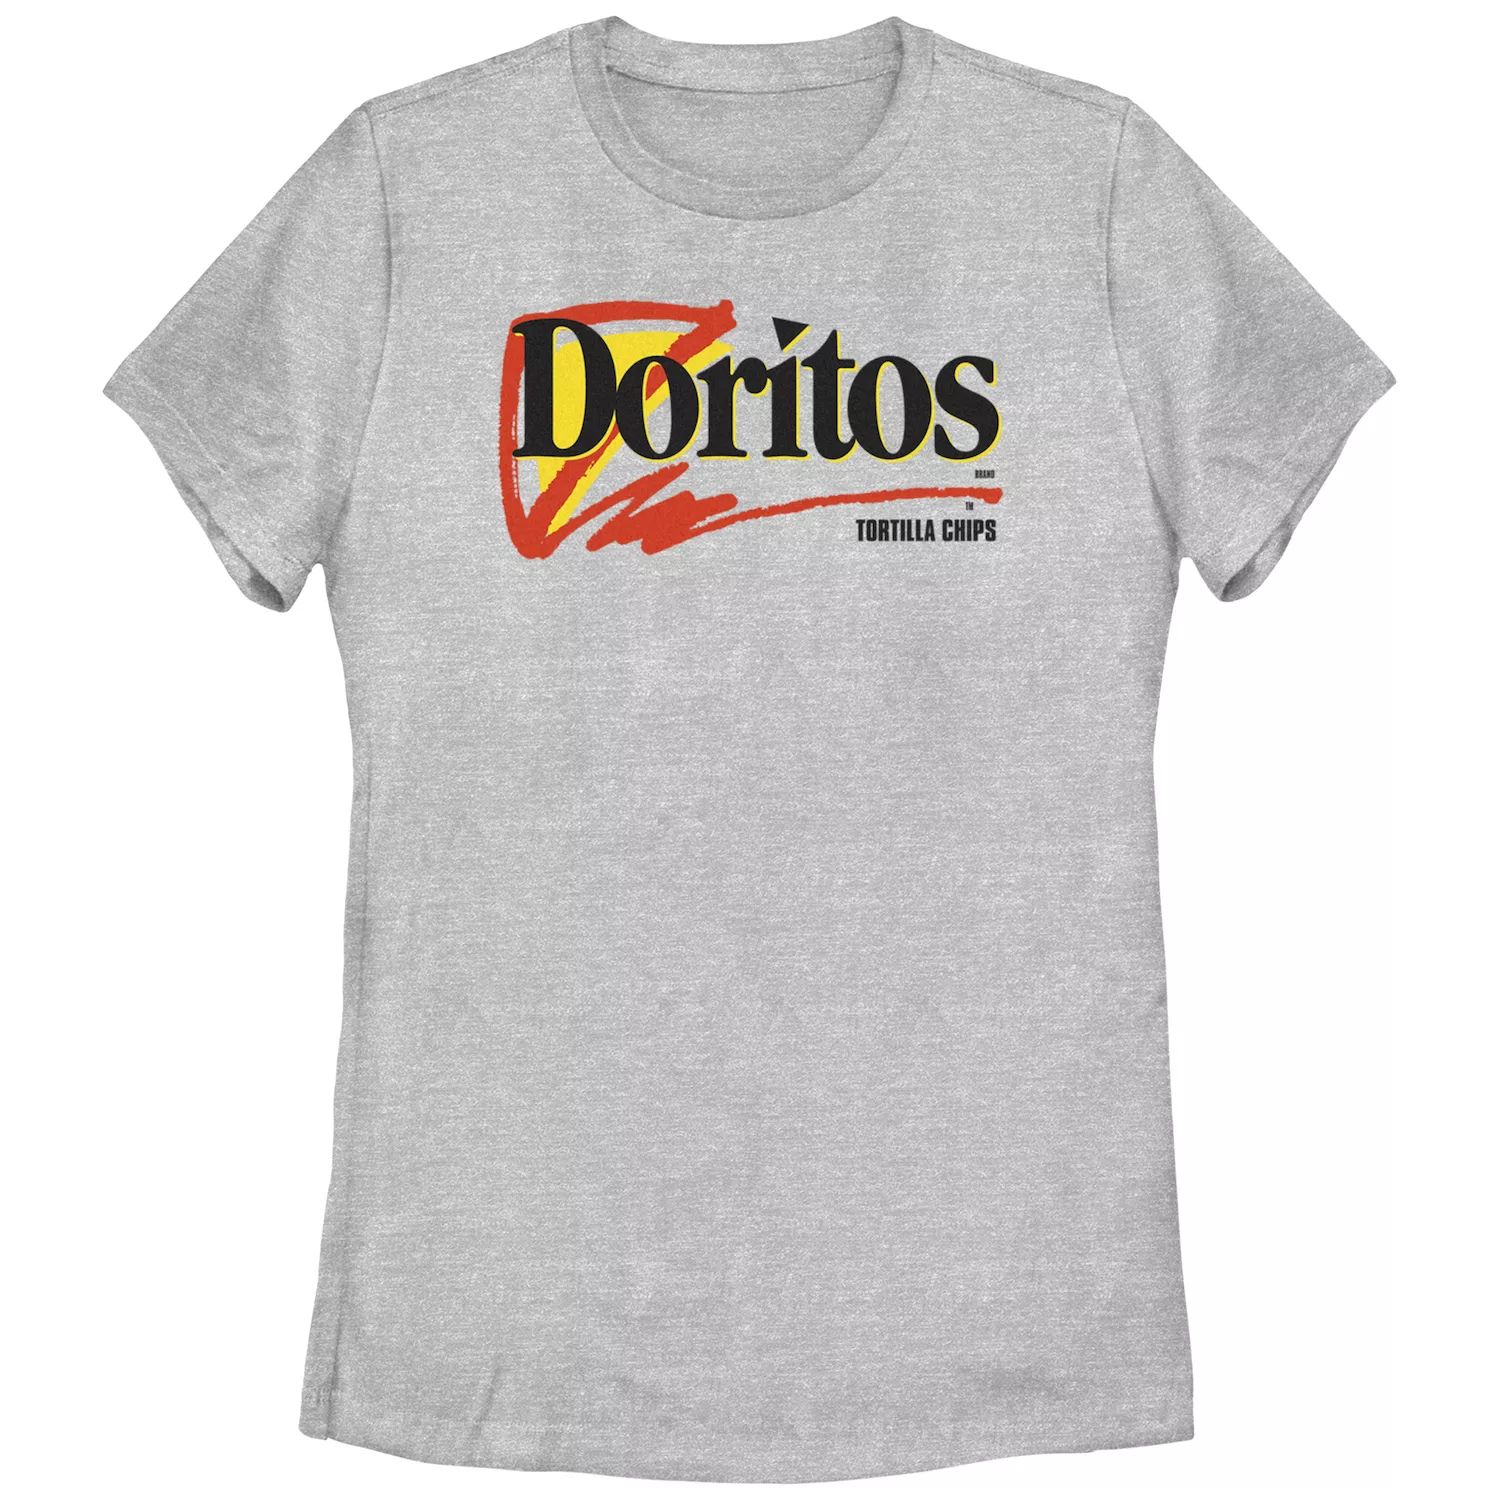 Детская футболка с логотипом Doritos Tortilla Chips и графическим рисунком Doritos детская футболка больших размеров doritos sunset в стиле 80 х с v образным вырезом и графикой doritos